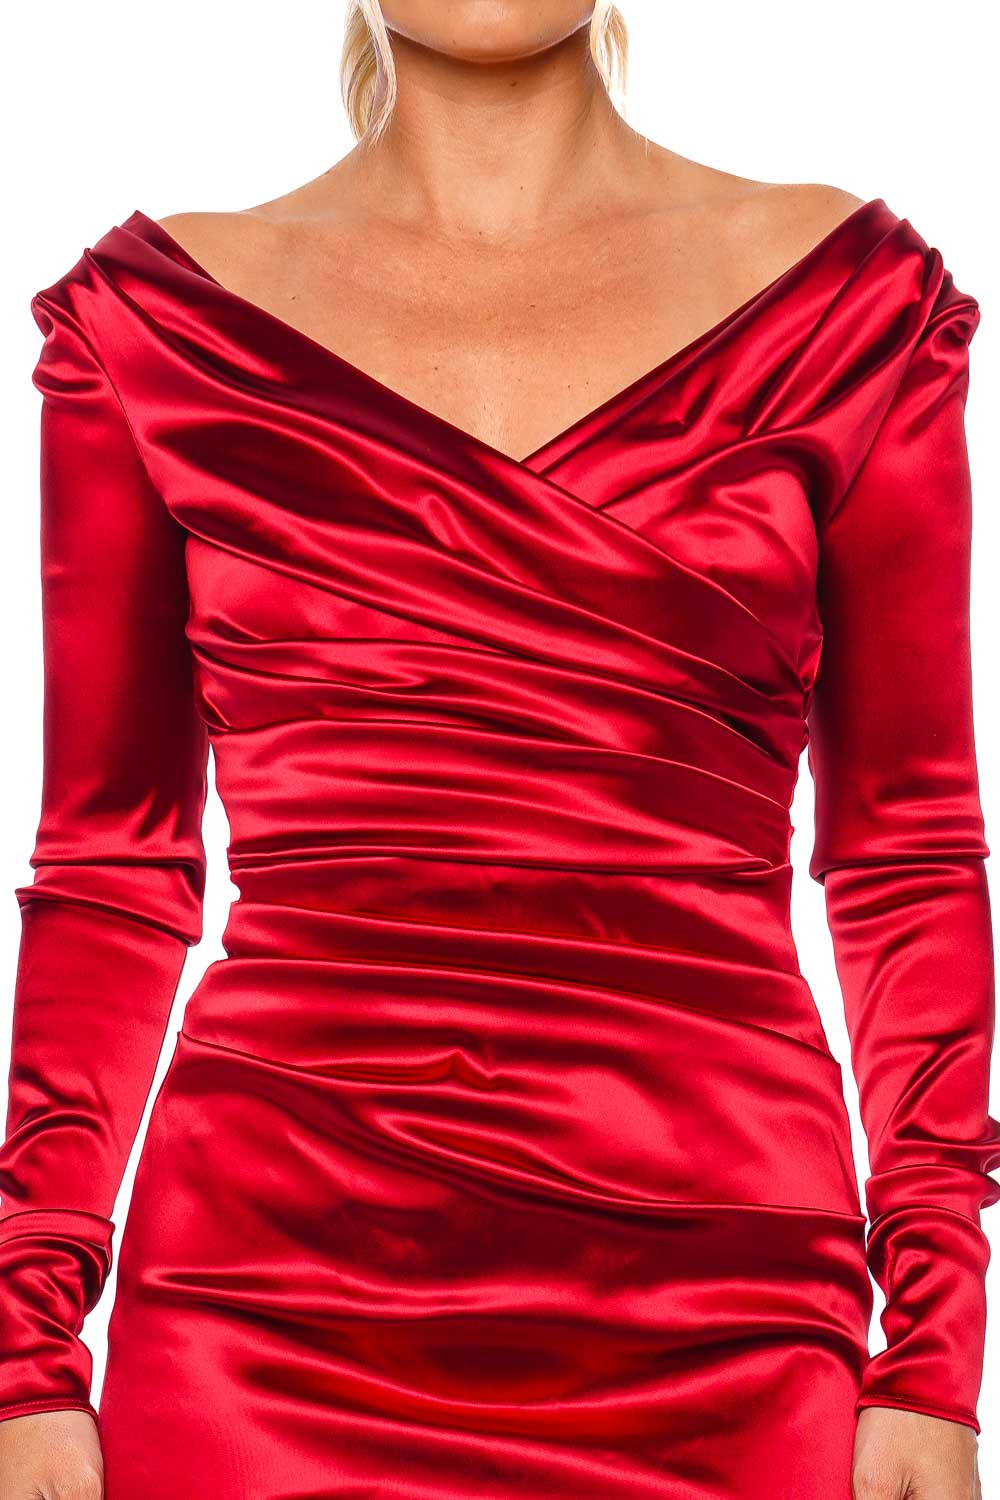 Dolce & Gabbana Red Long Sleeve Dress F6DJFT FURAD R0384 Grenade